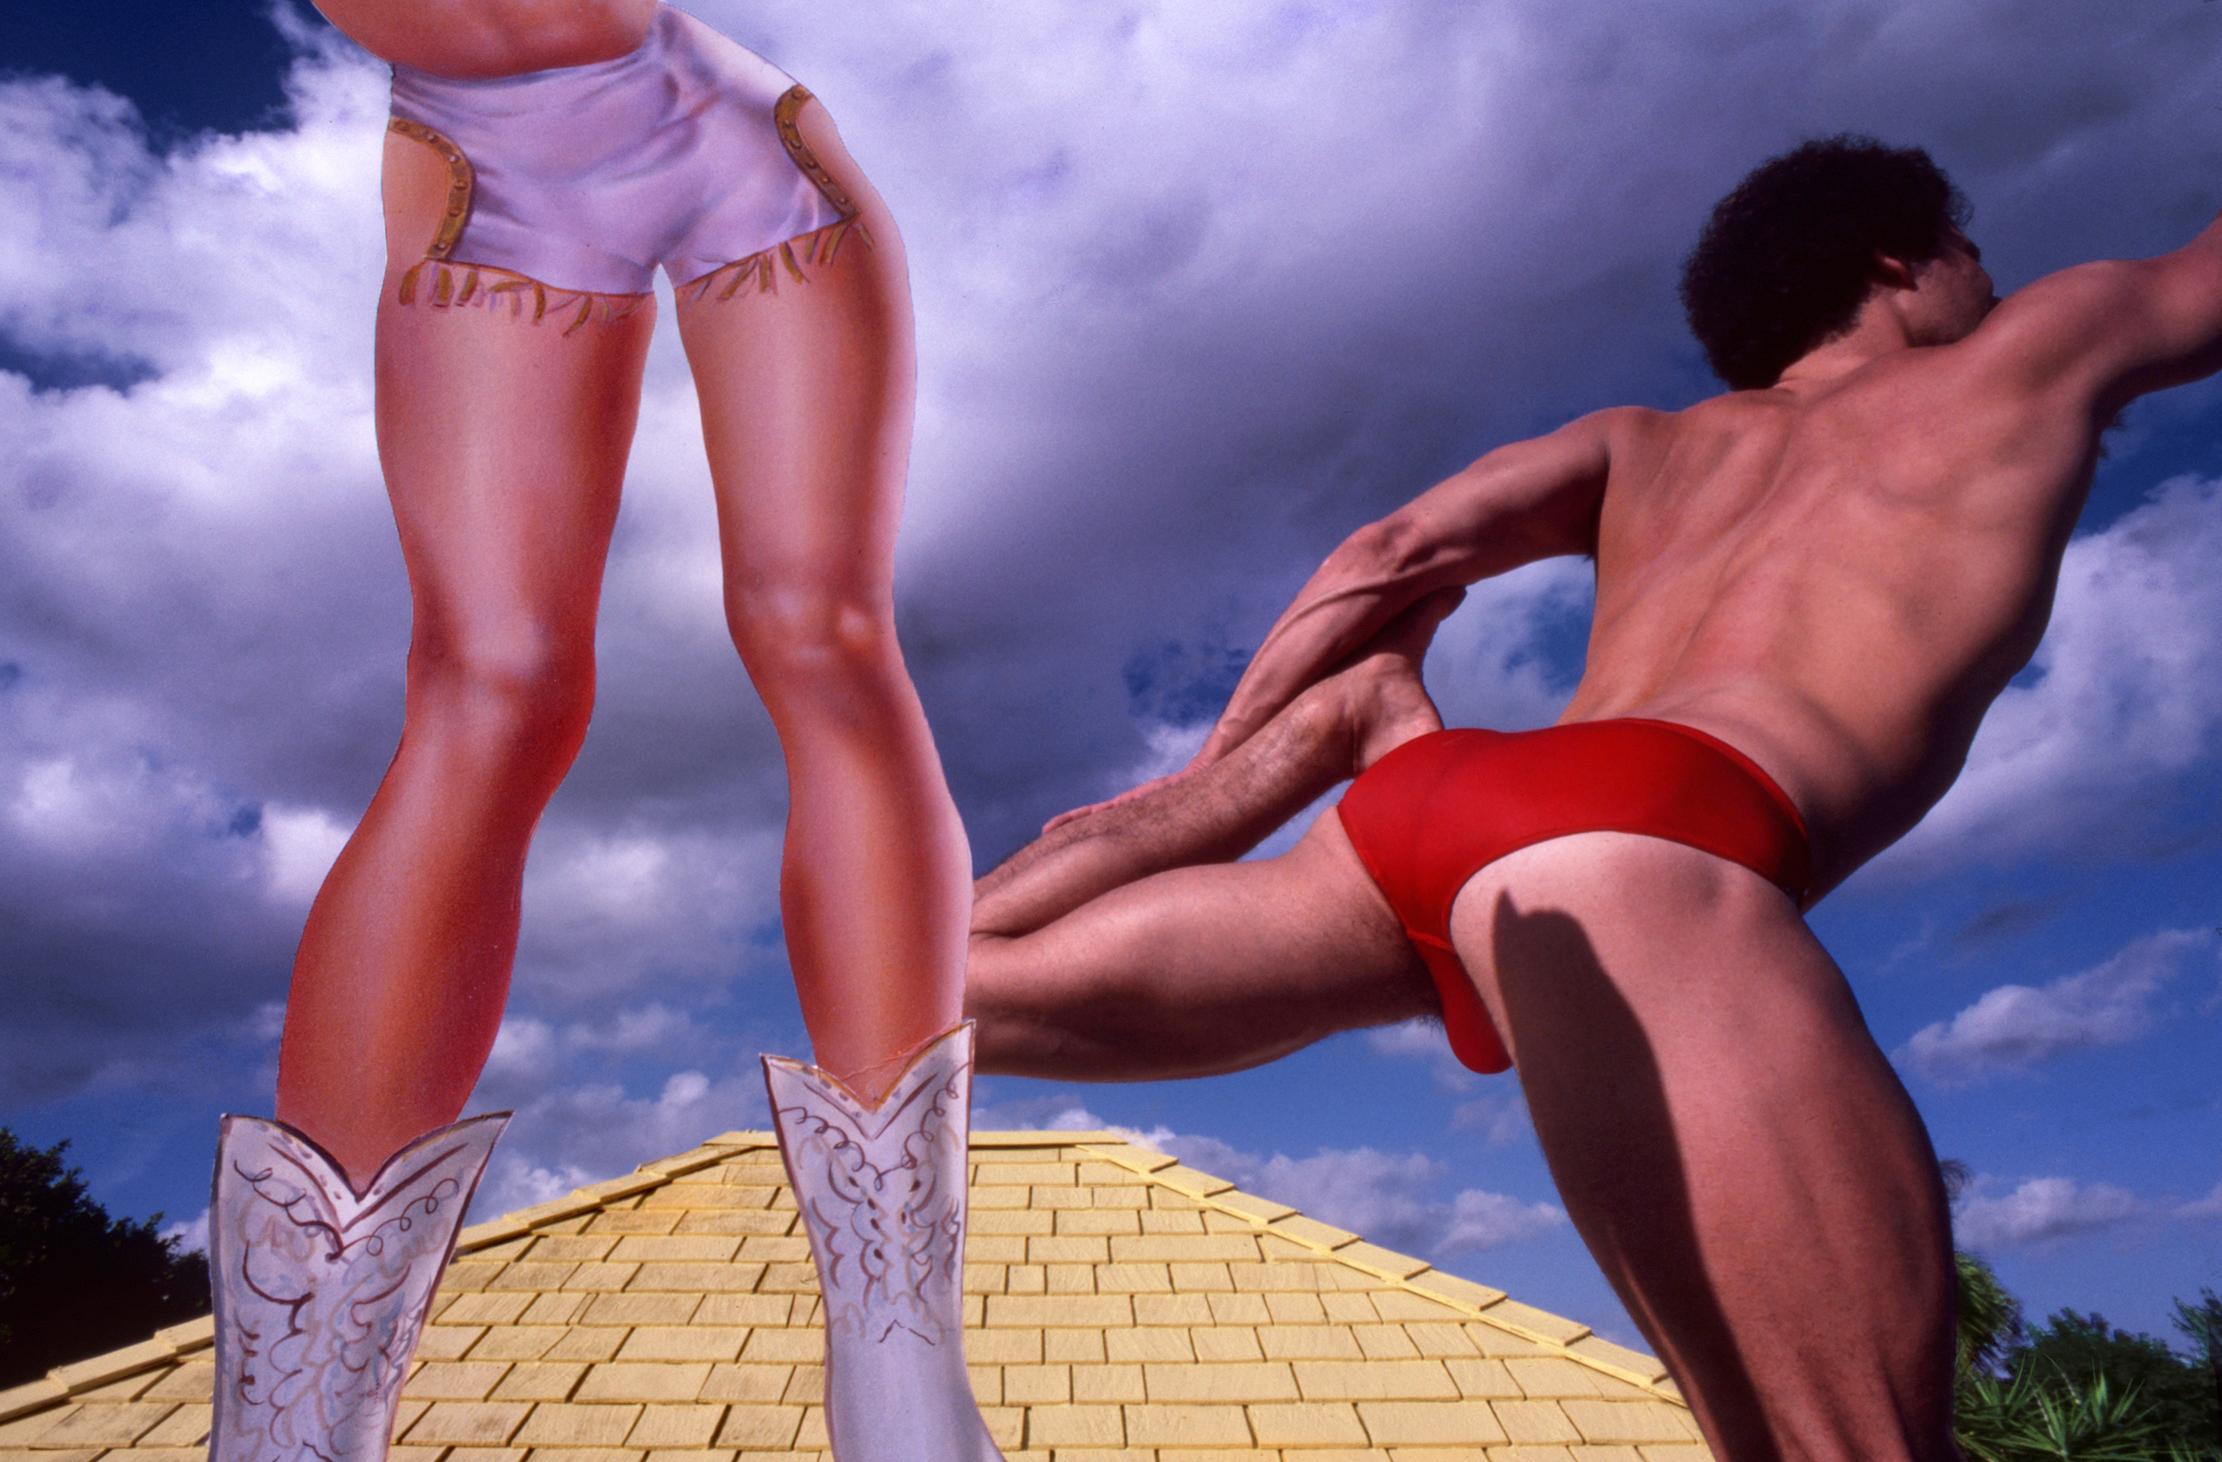 Robert Funk Nude Photograph – Muskulare männliche und  Leggy-Frauenfigur auf dem Dachboden